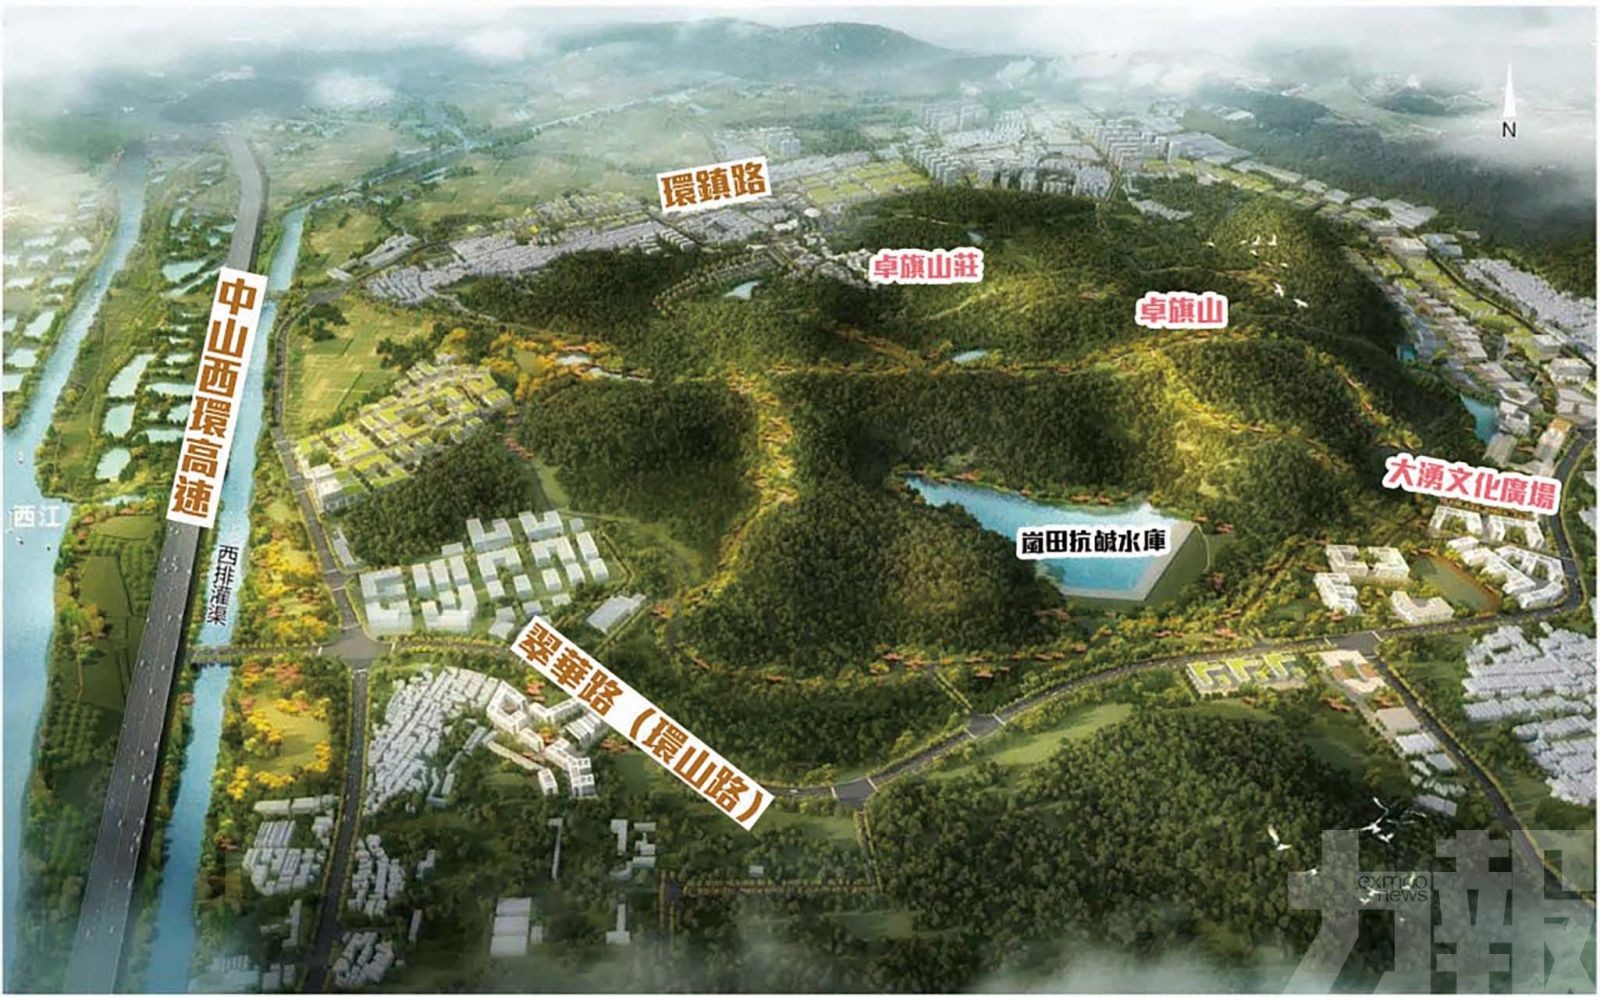 中山將打造運動主題郊野公園